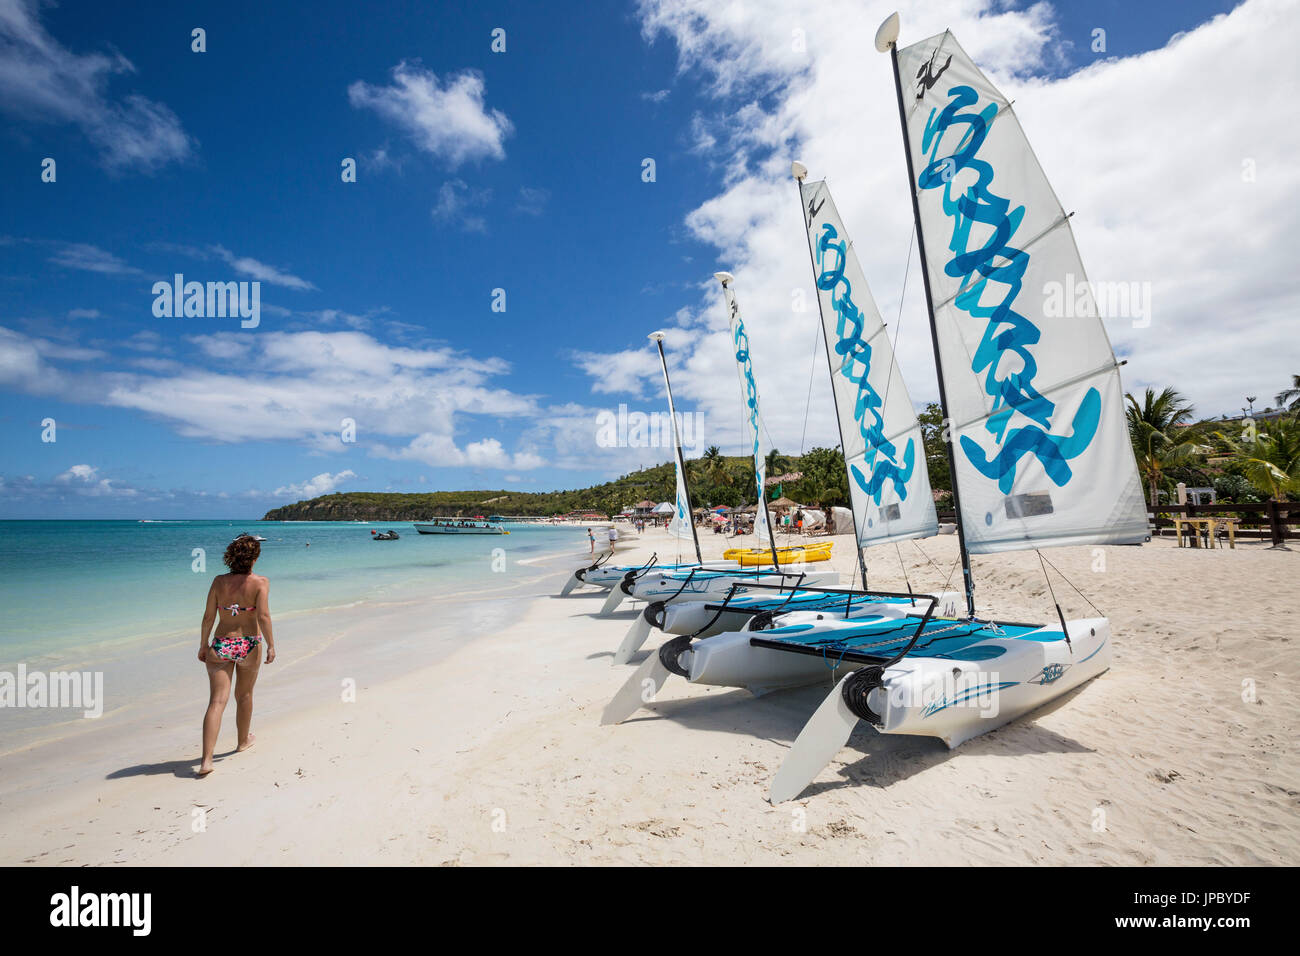 Ein Tourist auf dem sandigen Strand, ausgestattet mit Katamaranen Dickenson Bay Karibik Antigua und Barbuda Leeward Island West Indies Stockfoto